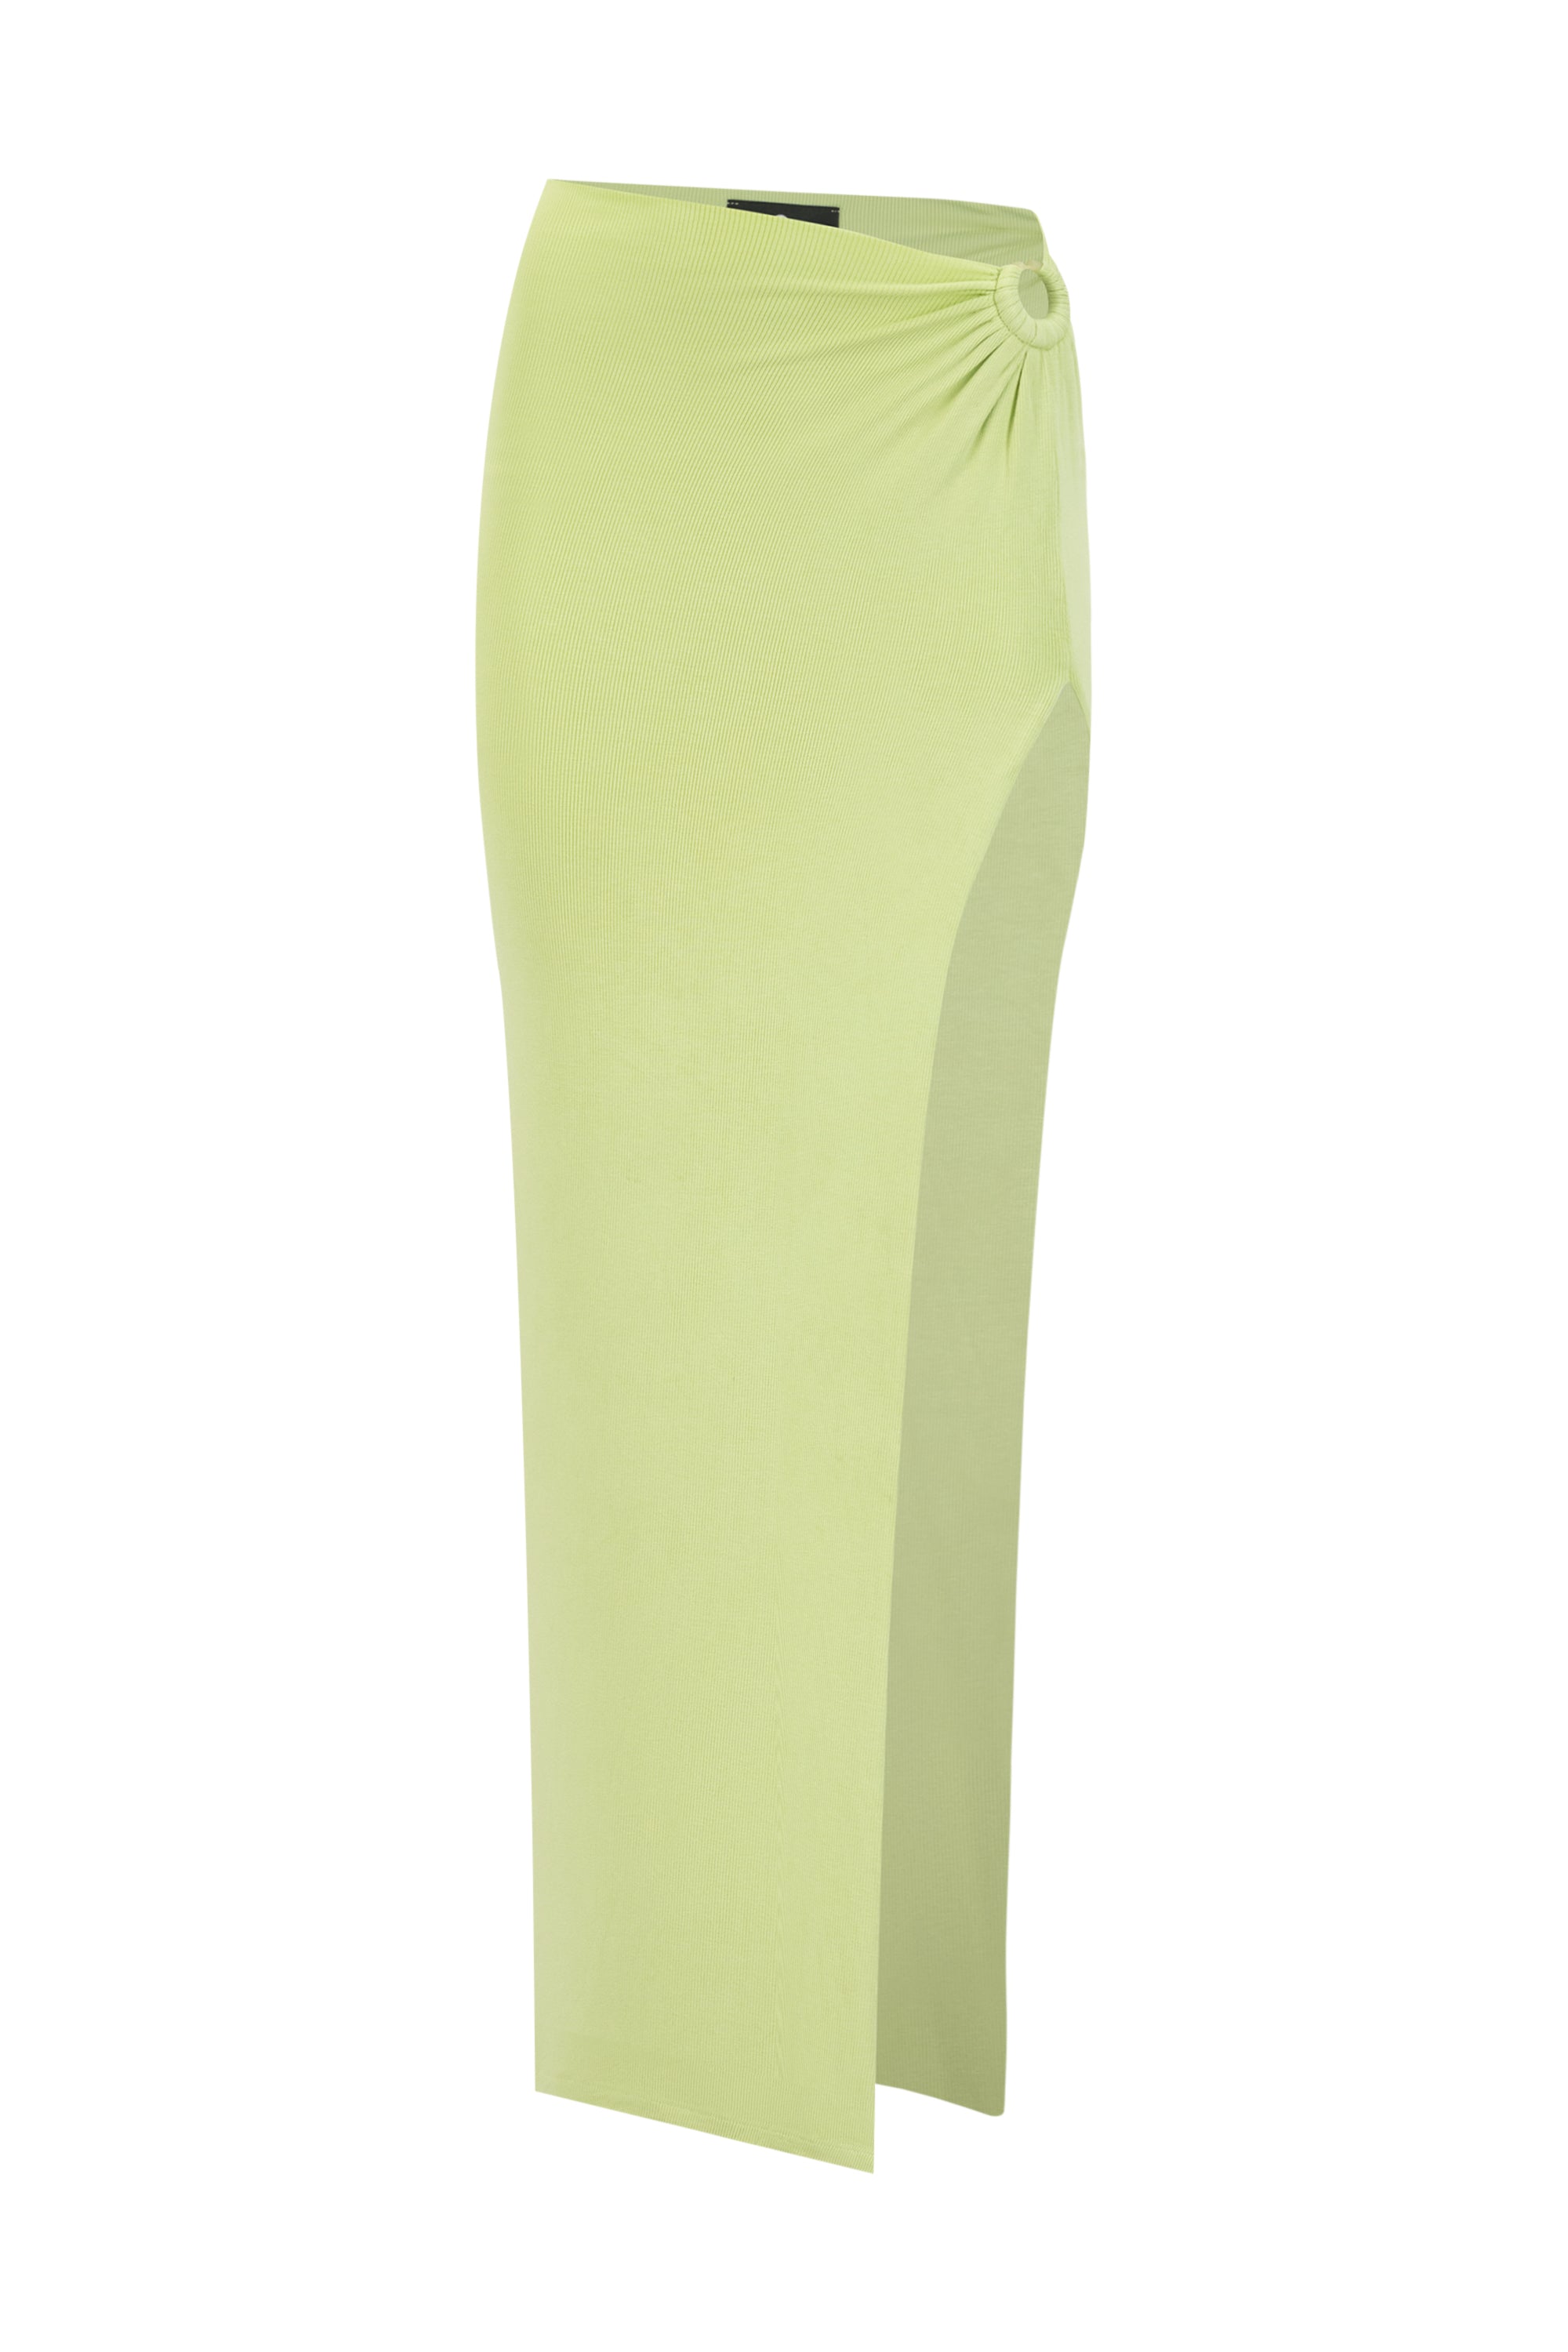 Iris Skirt Green